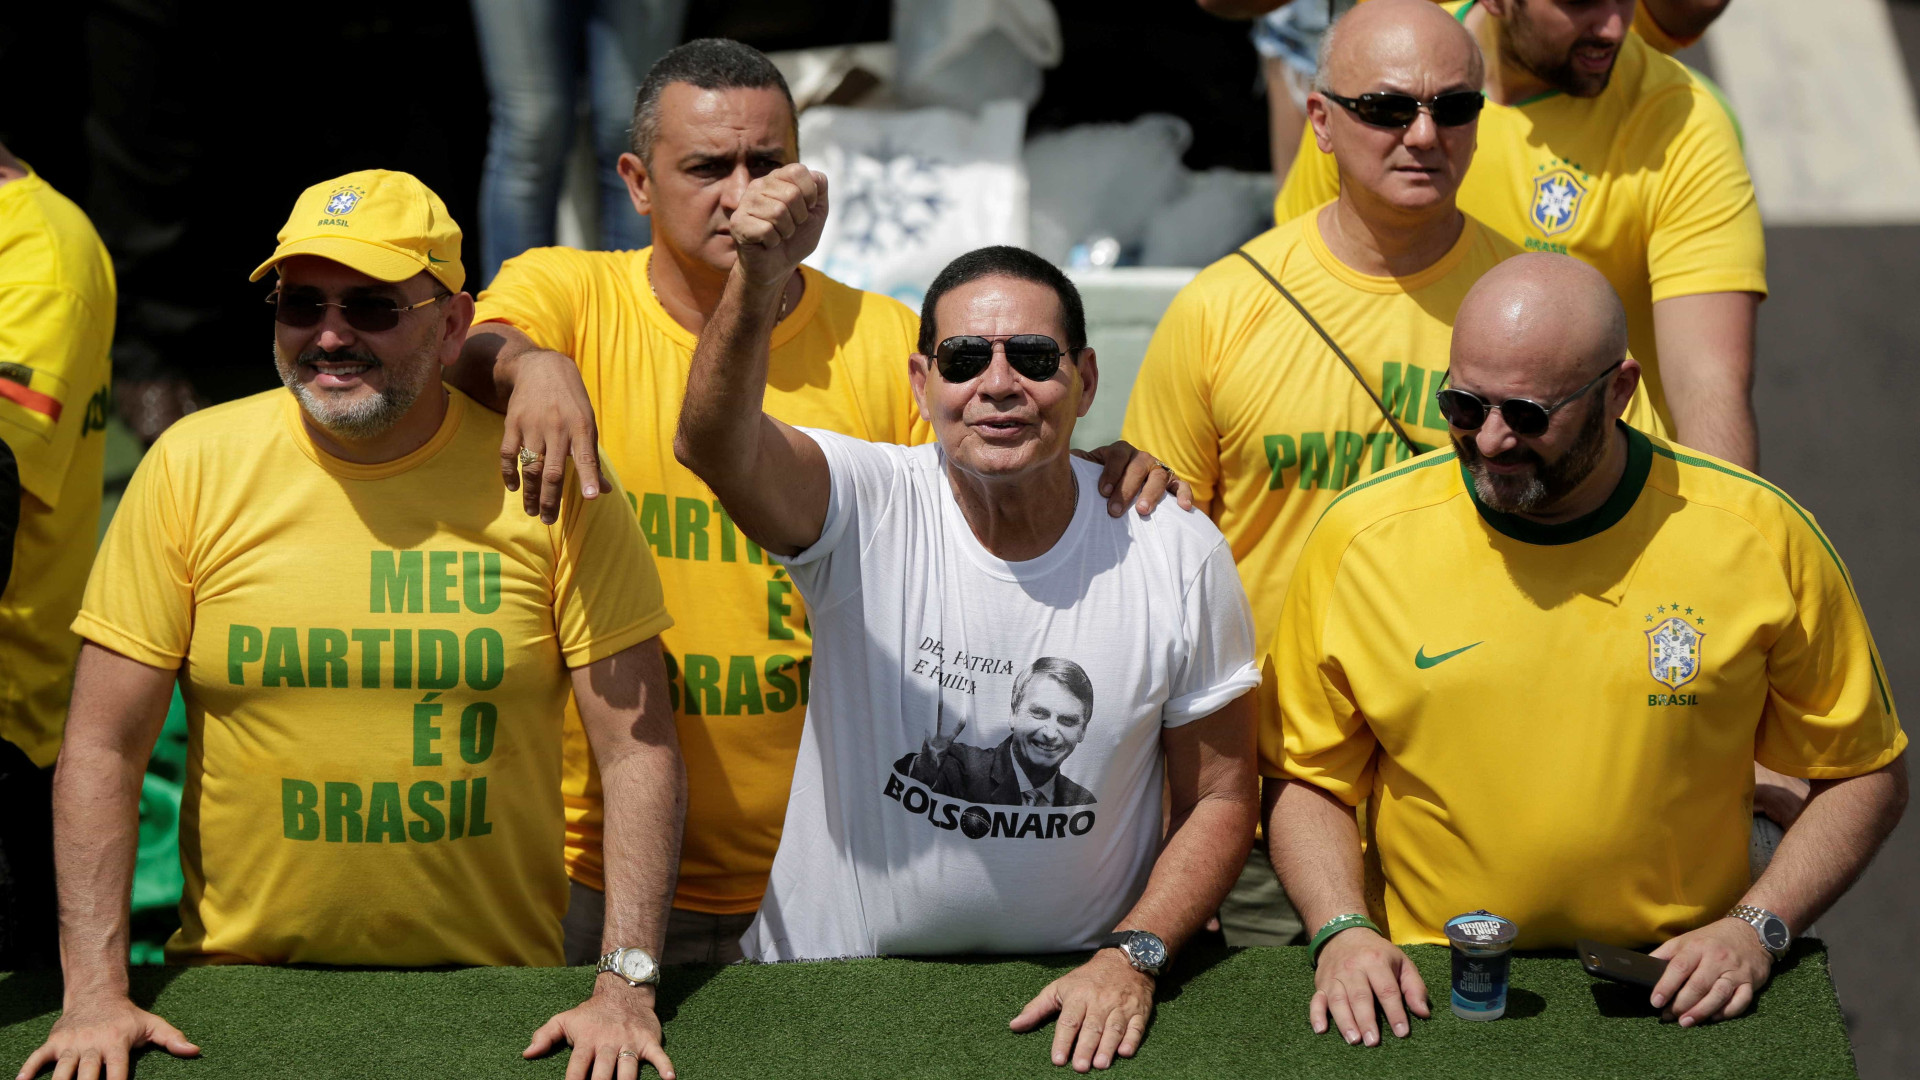 'Mourão só atrapalha', diz líder do PSL sobre vice de Bolsonaro